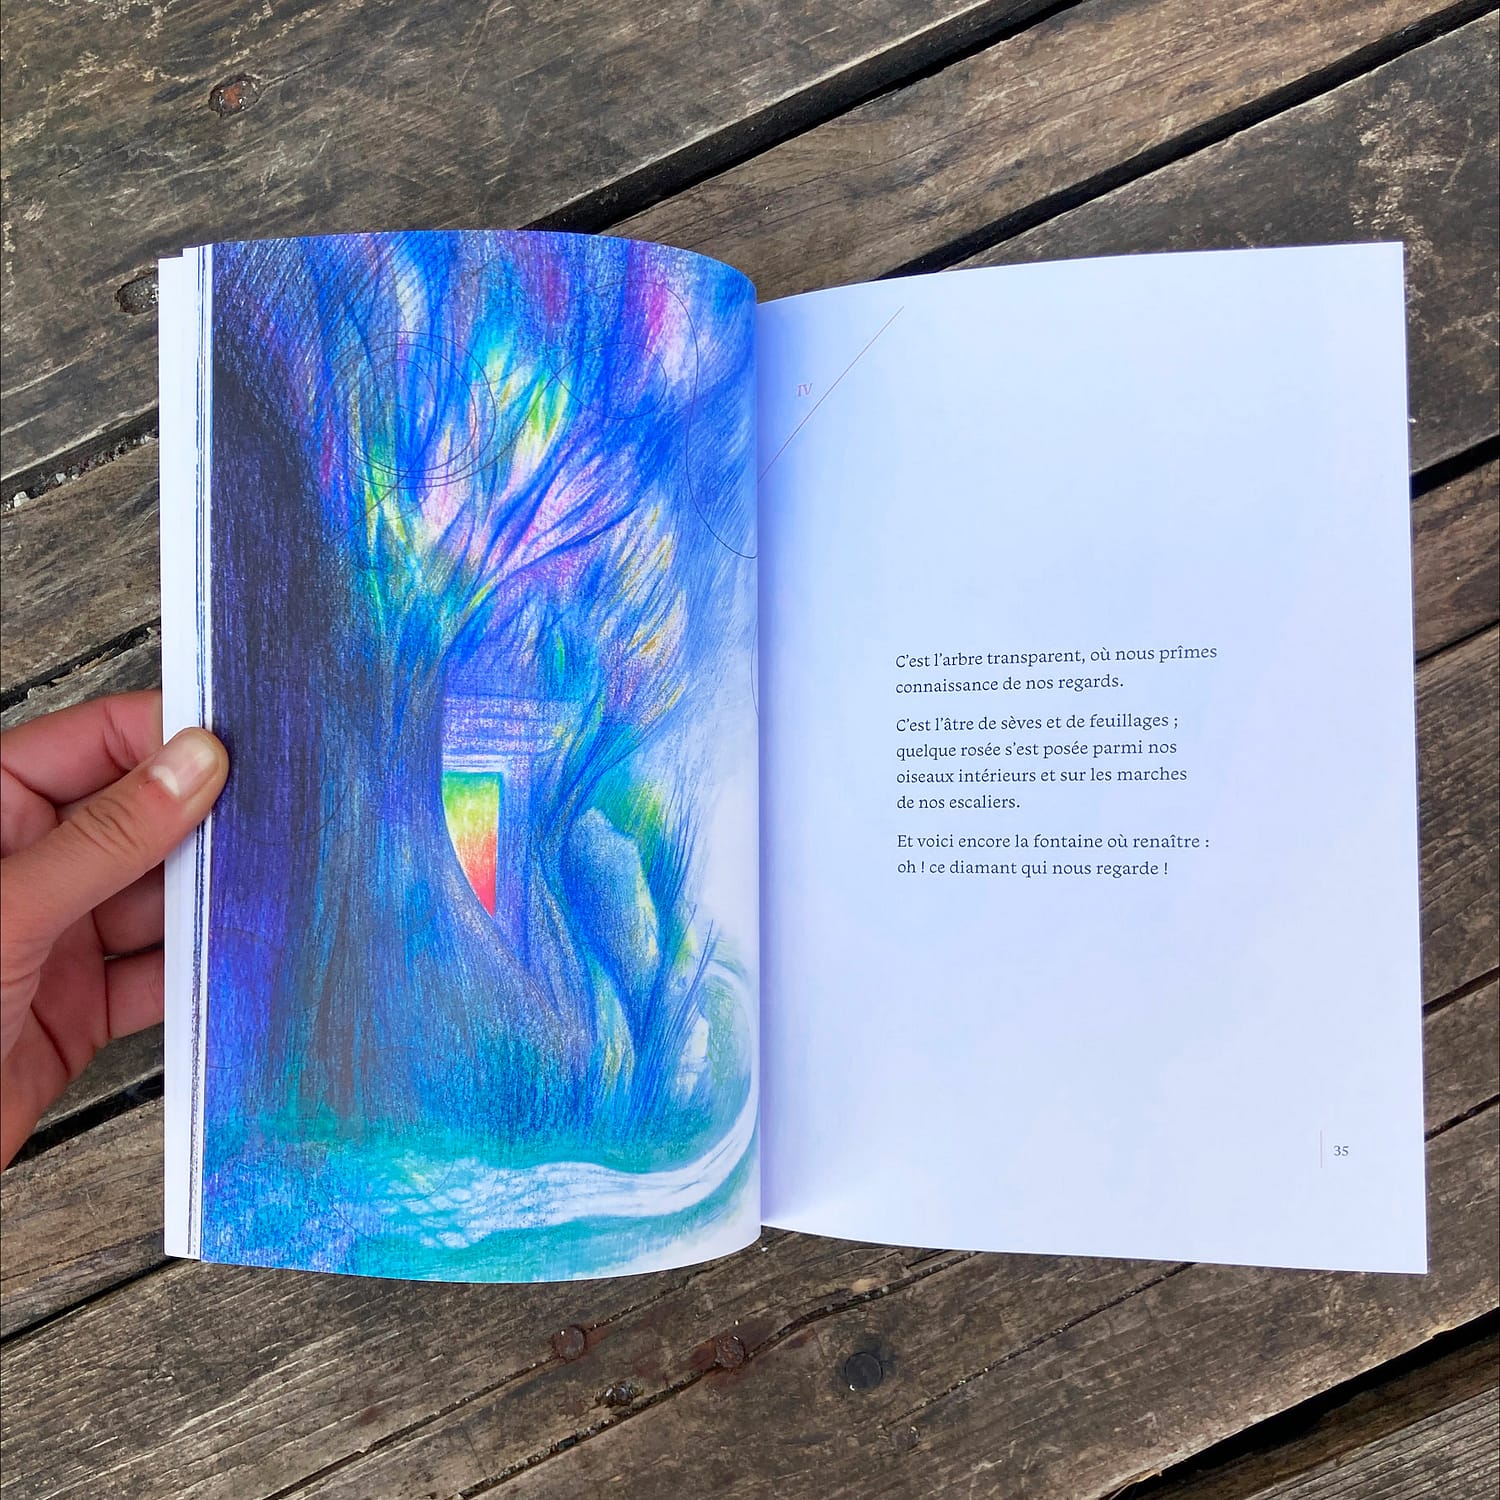 Double page de la partie 2 "La demeure aux infinis". Page de gauche une illustration au crayon dans les tons bleu avec des petites touches plus lumineuses, comme sous la mer. Page de droite : un poème.